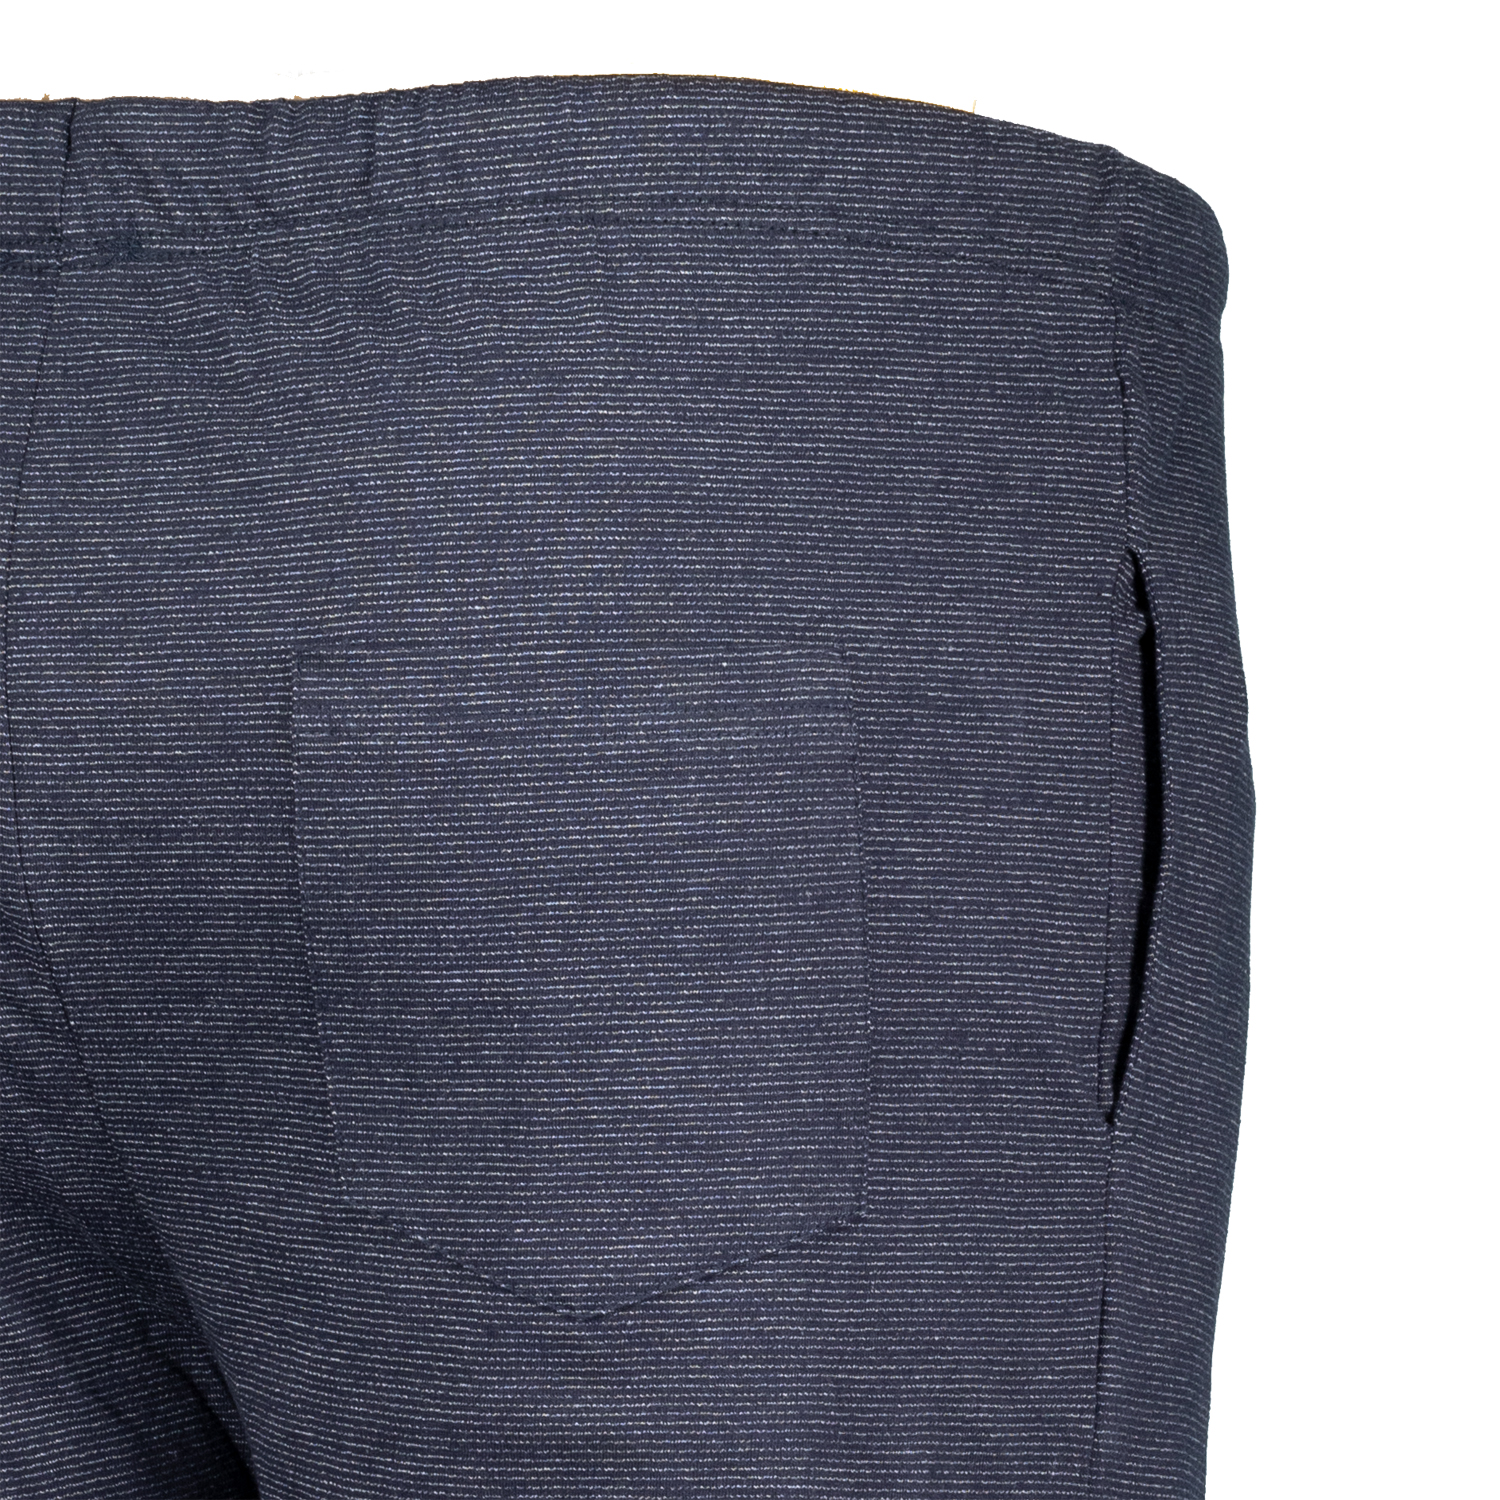 Herren Loungewear Short von ADAMO Serie Luis meliert in großen Größen bis 12XL